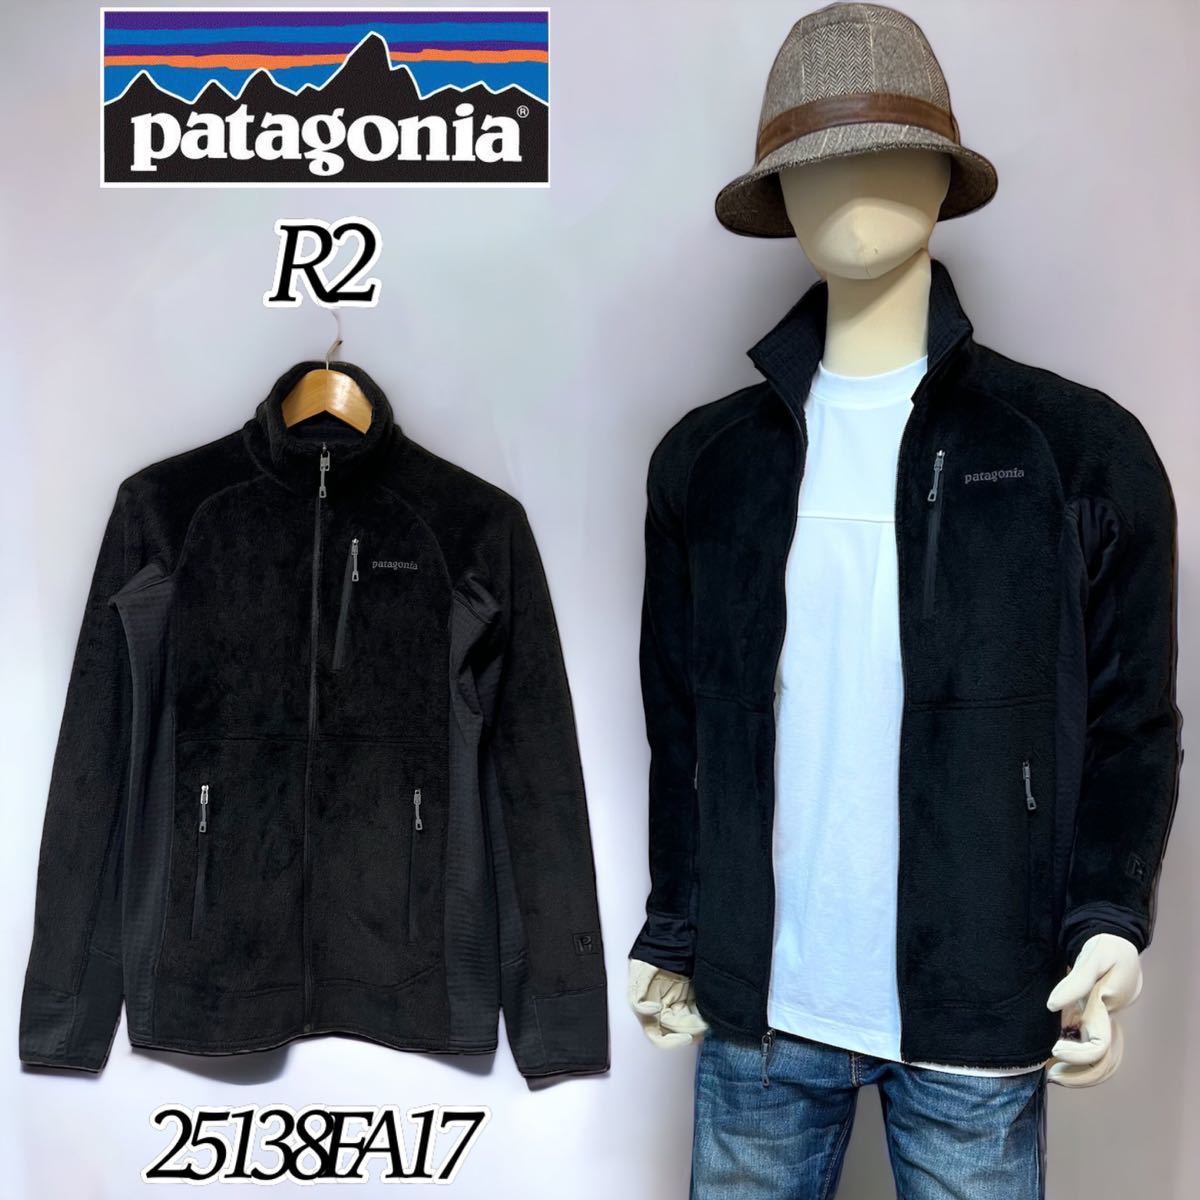 【希少】Patagonia R2 FLEECE JACKET BLACK パタゴニア R2 フリース ジャケット 25138FA17 メンズS 黒